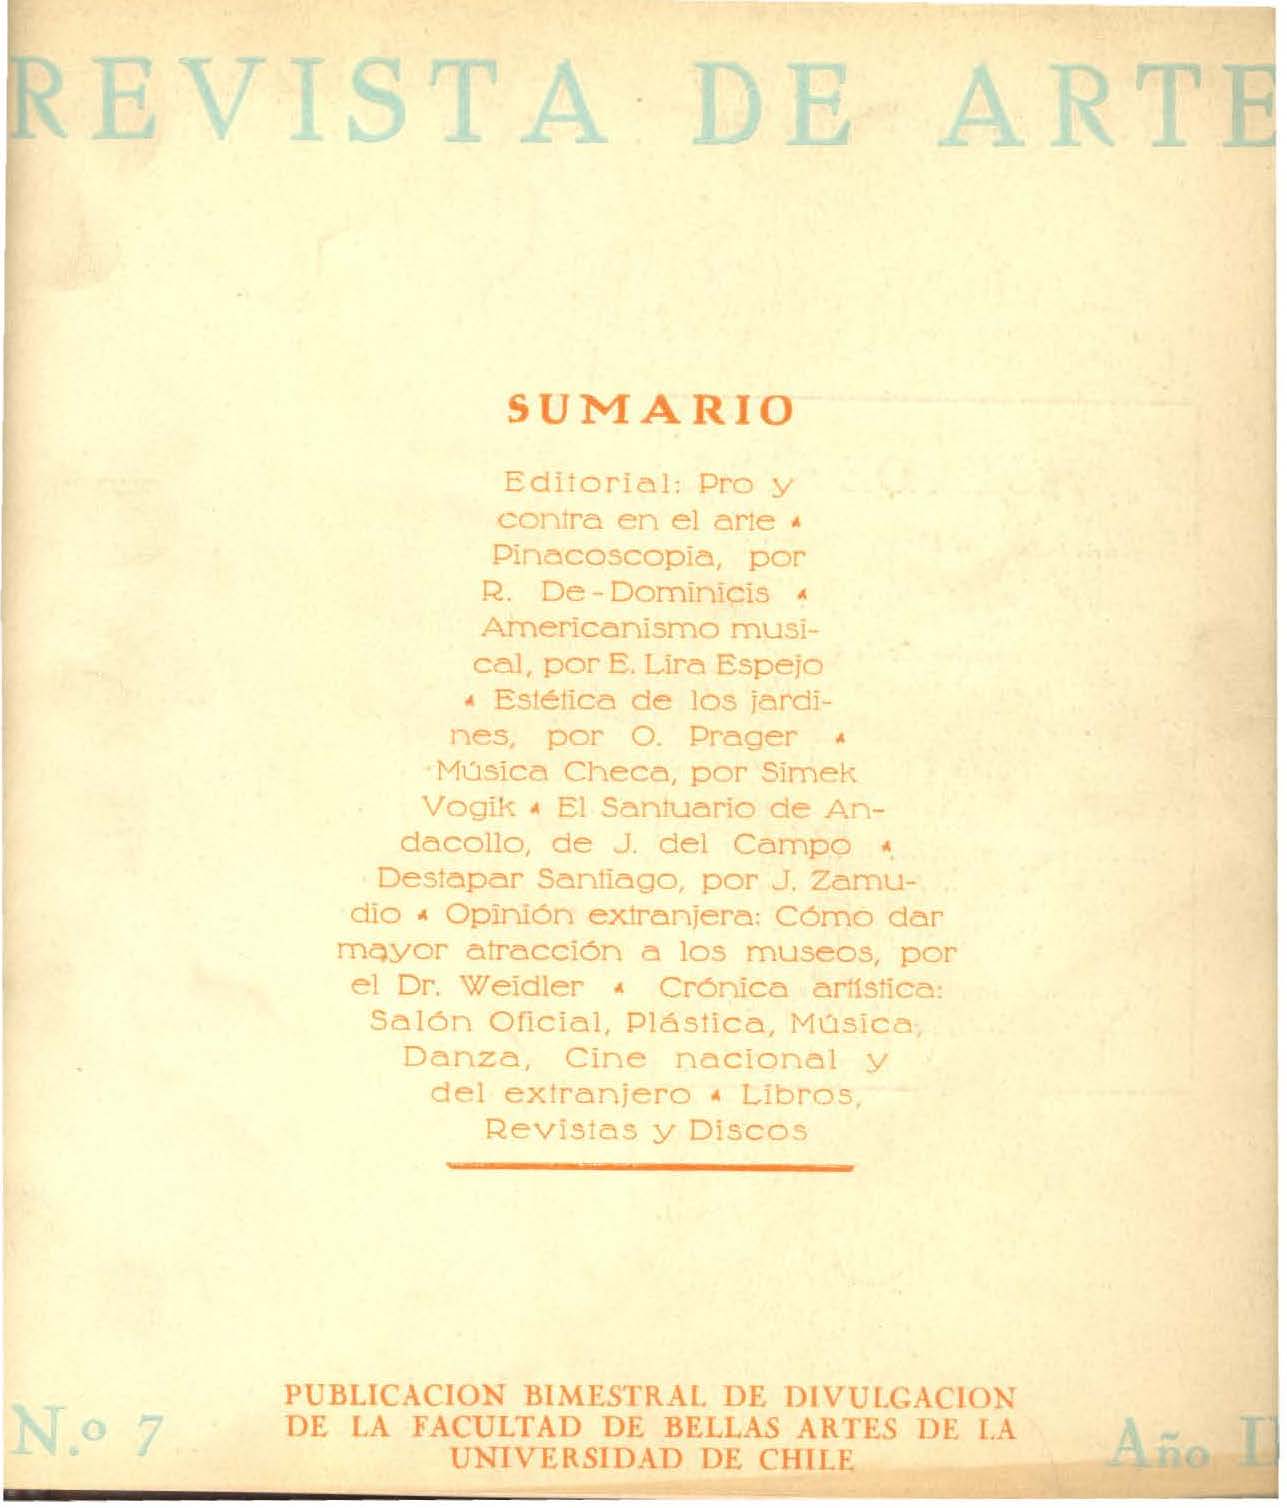 											Ver Vol. 2 Núm. 7 (1935)
										